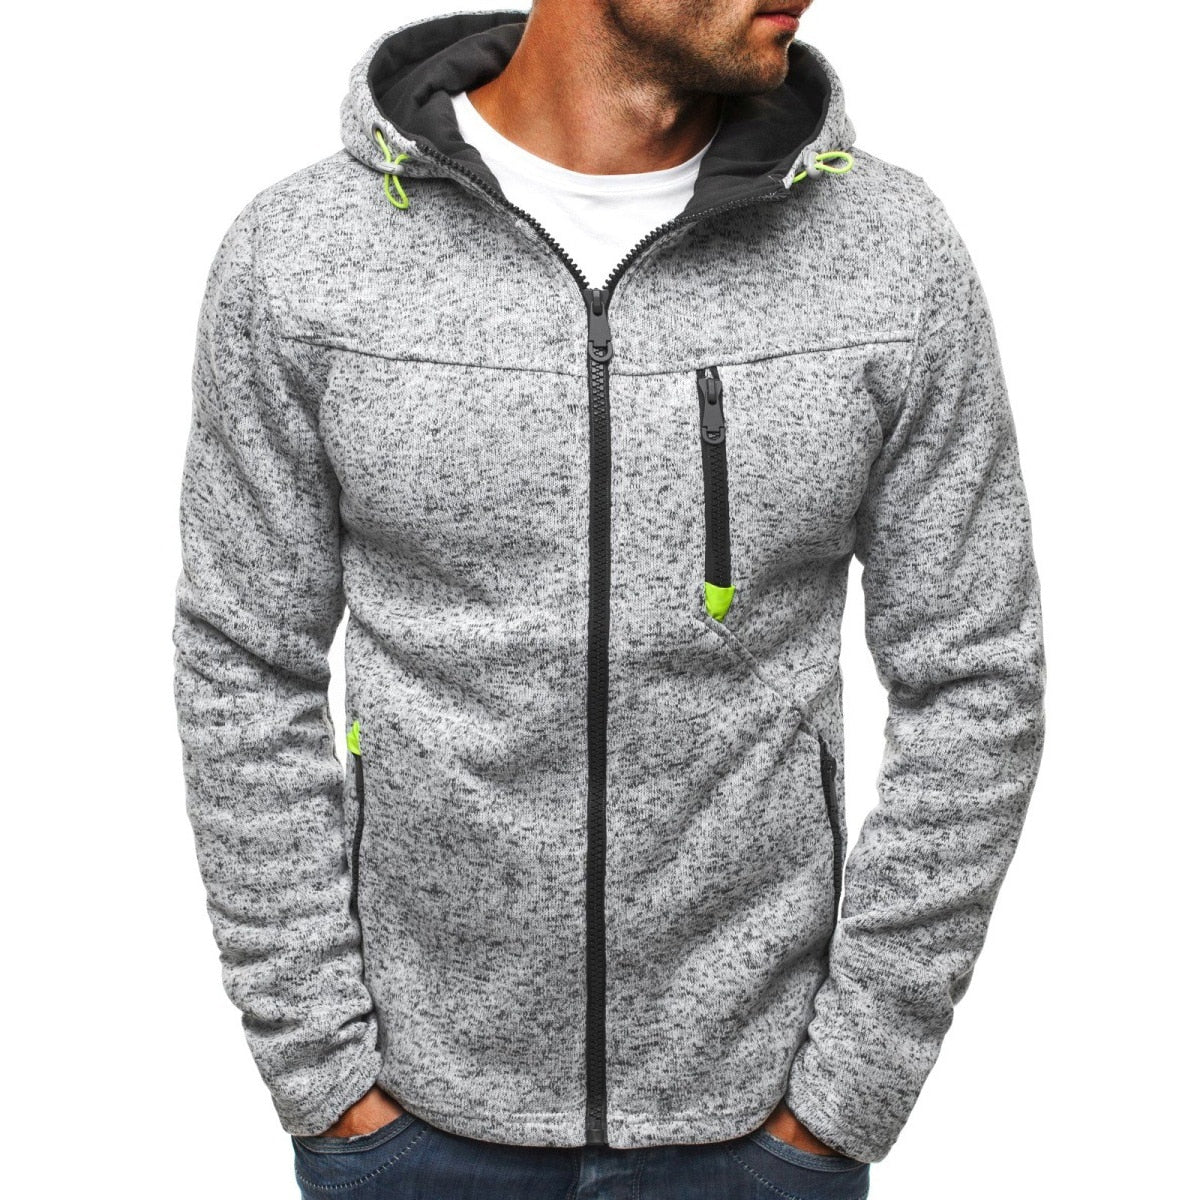 MRMT 2020 Brand Jacquard Hoodie Fleece Cardigan Hooded Coat Men's Hoodies Sweatshirts Pullover For Male Hoody Sweatshirt